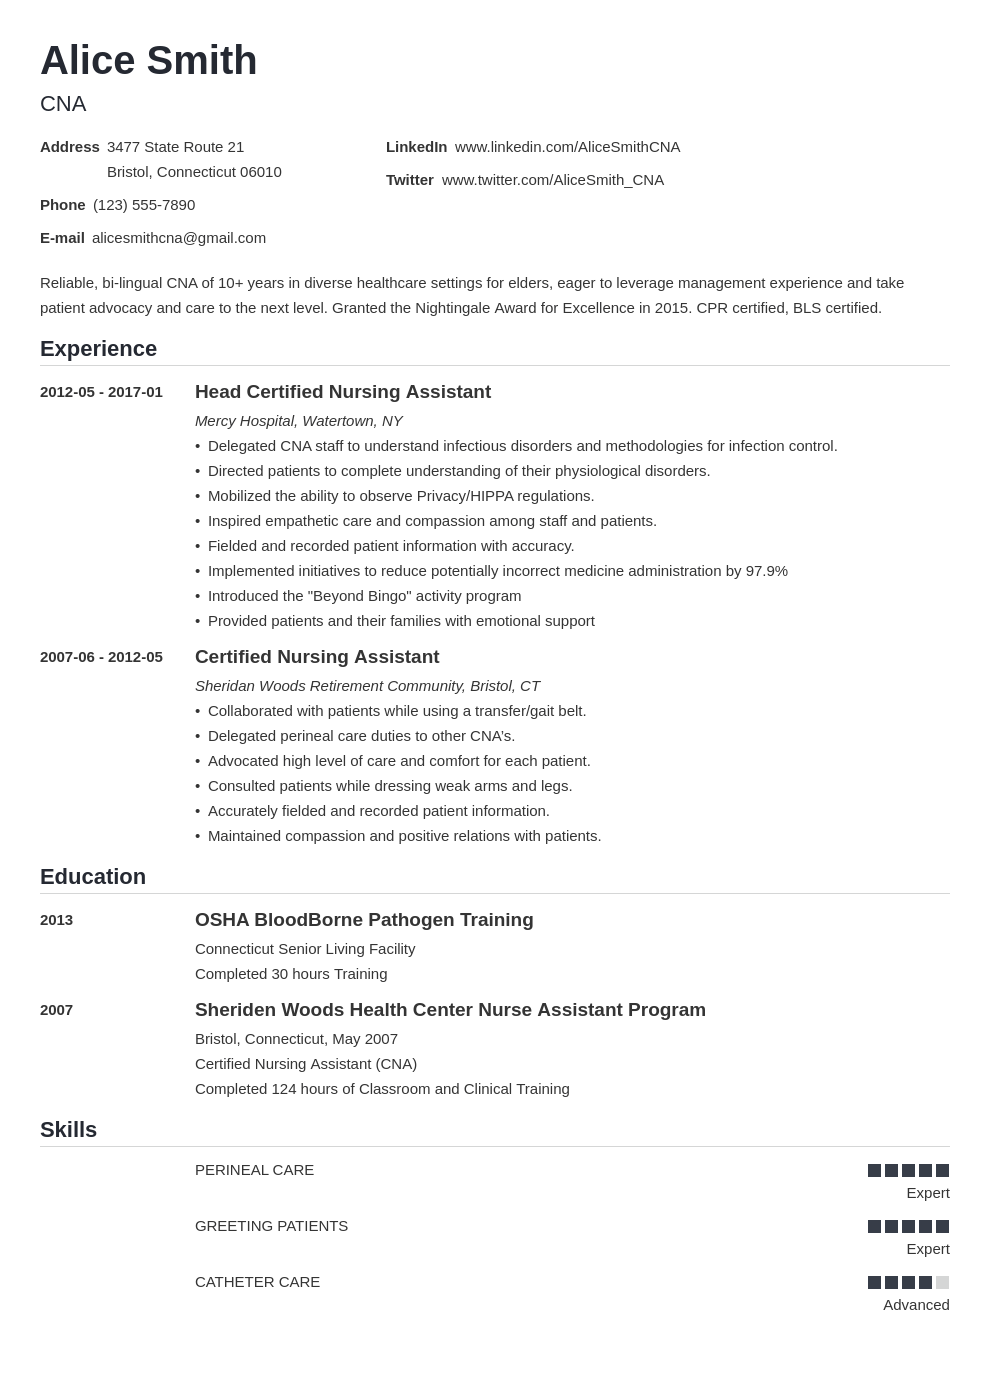 Job description of certified nursing assistant on resume